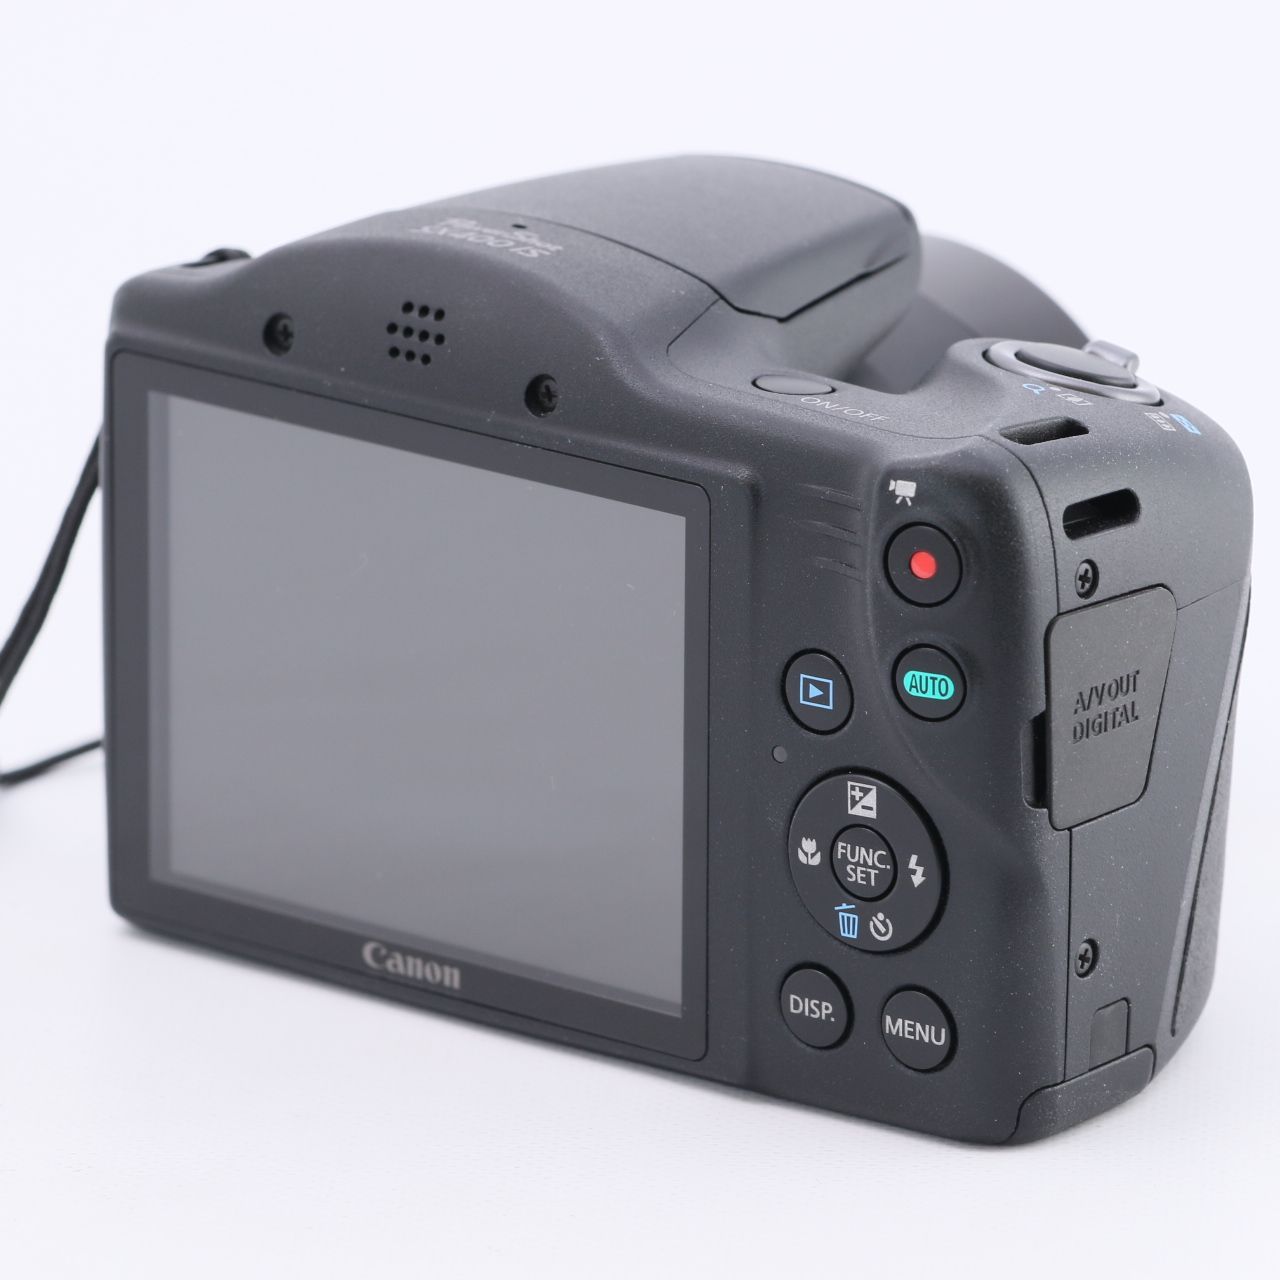 ブラック系Canon Power shot SX400IS - デジタルカメラ